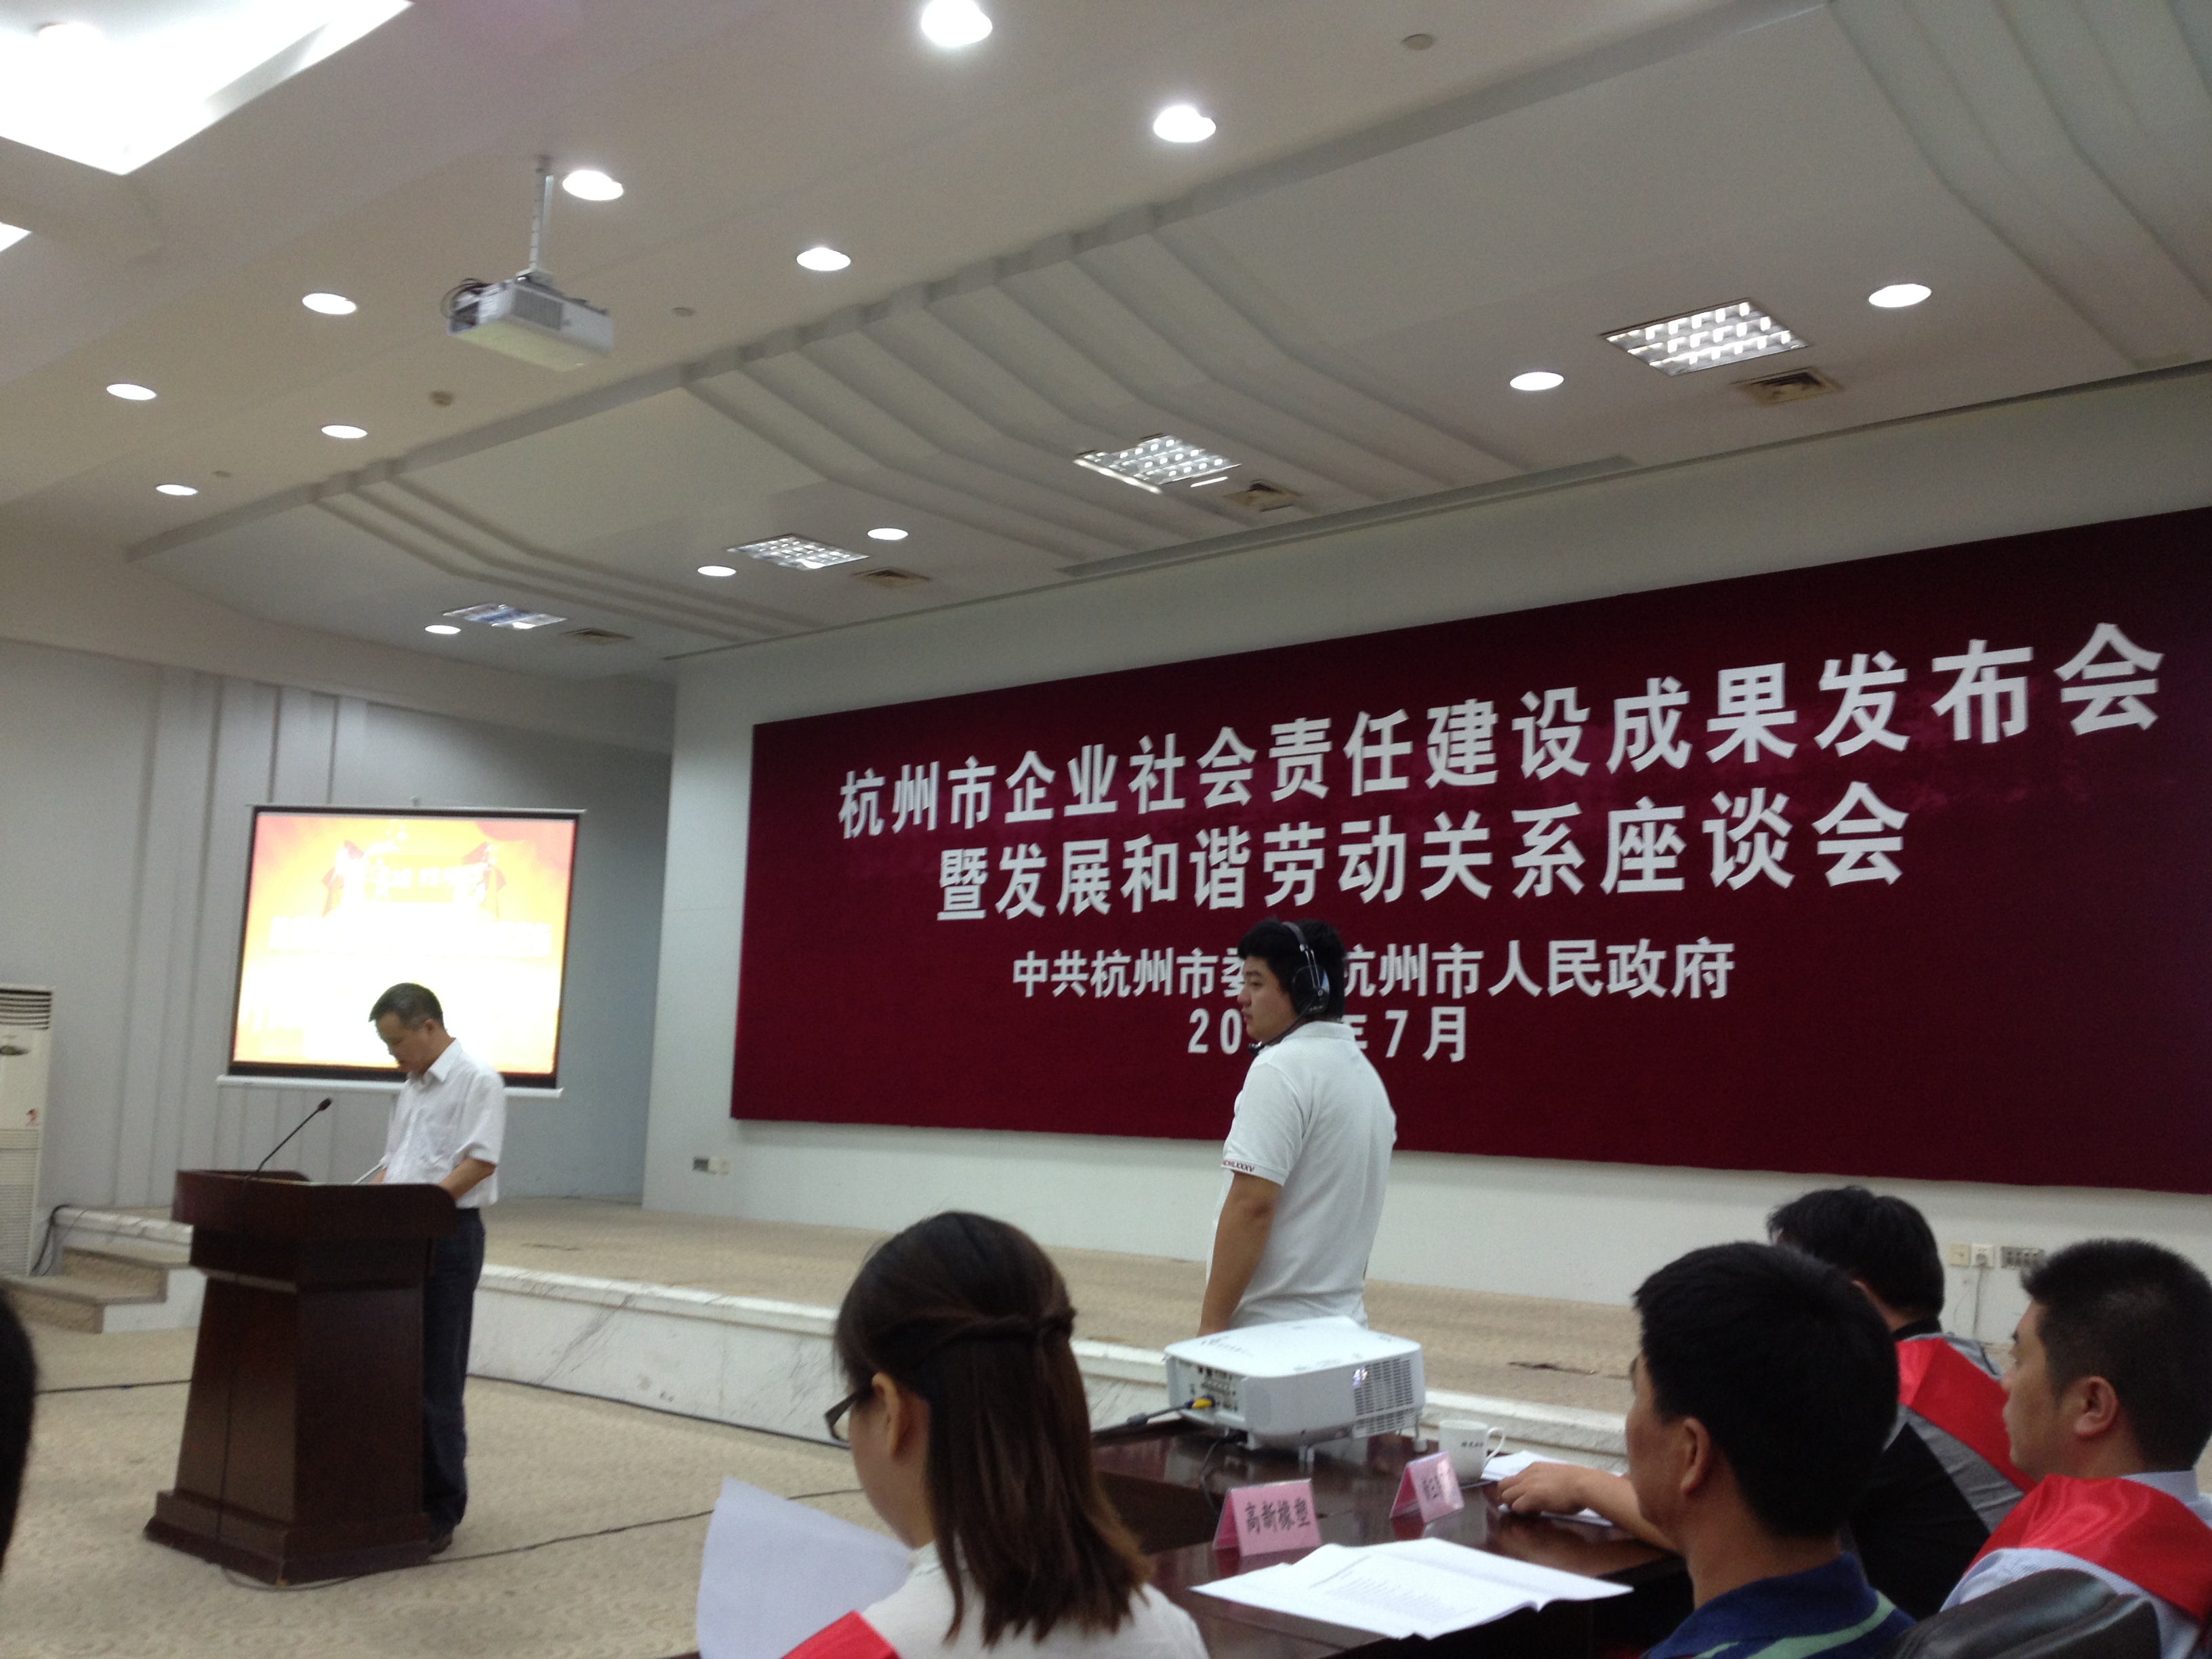 杭州万华控股集团有限公司荣获《杭州市企业社会责任建设A级企业》先进单位荣誉称号 1.jpg